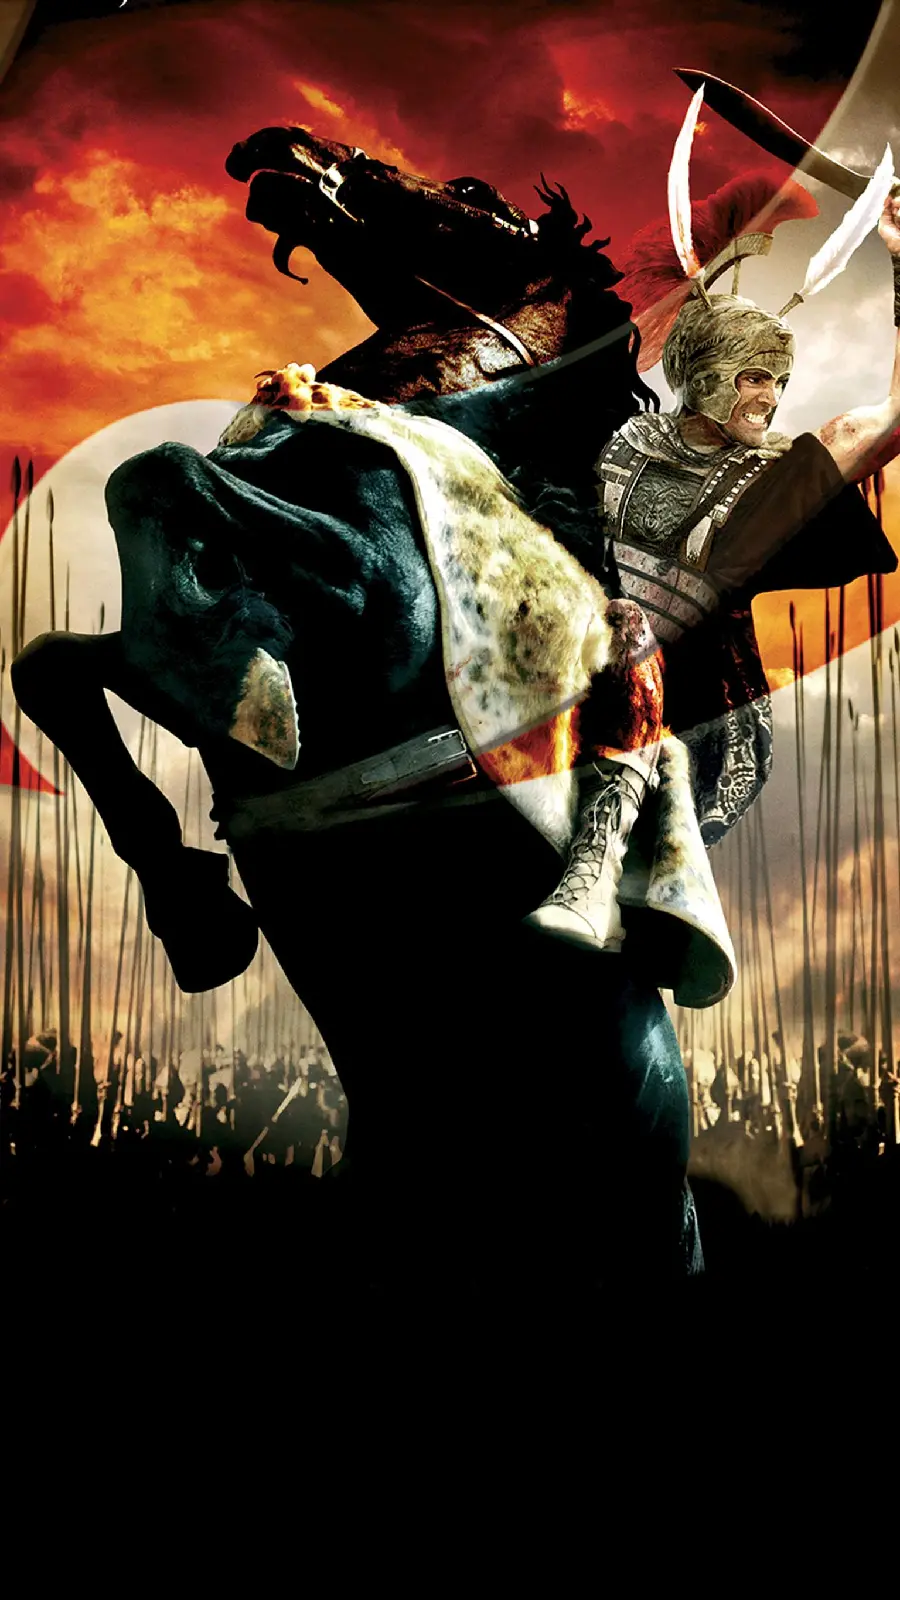 عکس فیلم اسکندر کبیر سوار بر اسب سیاه با لباس جنگ